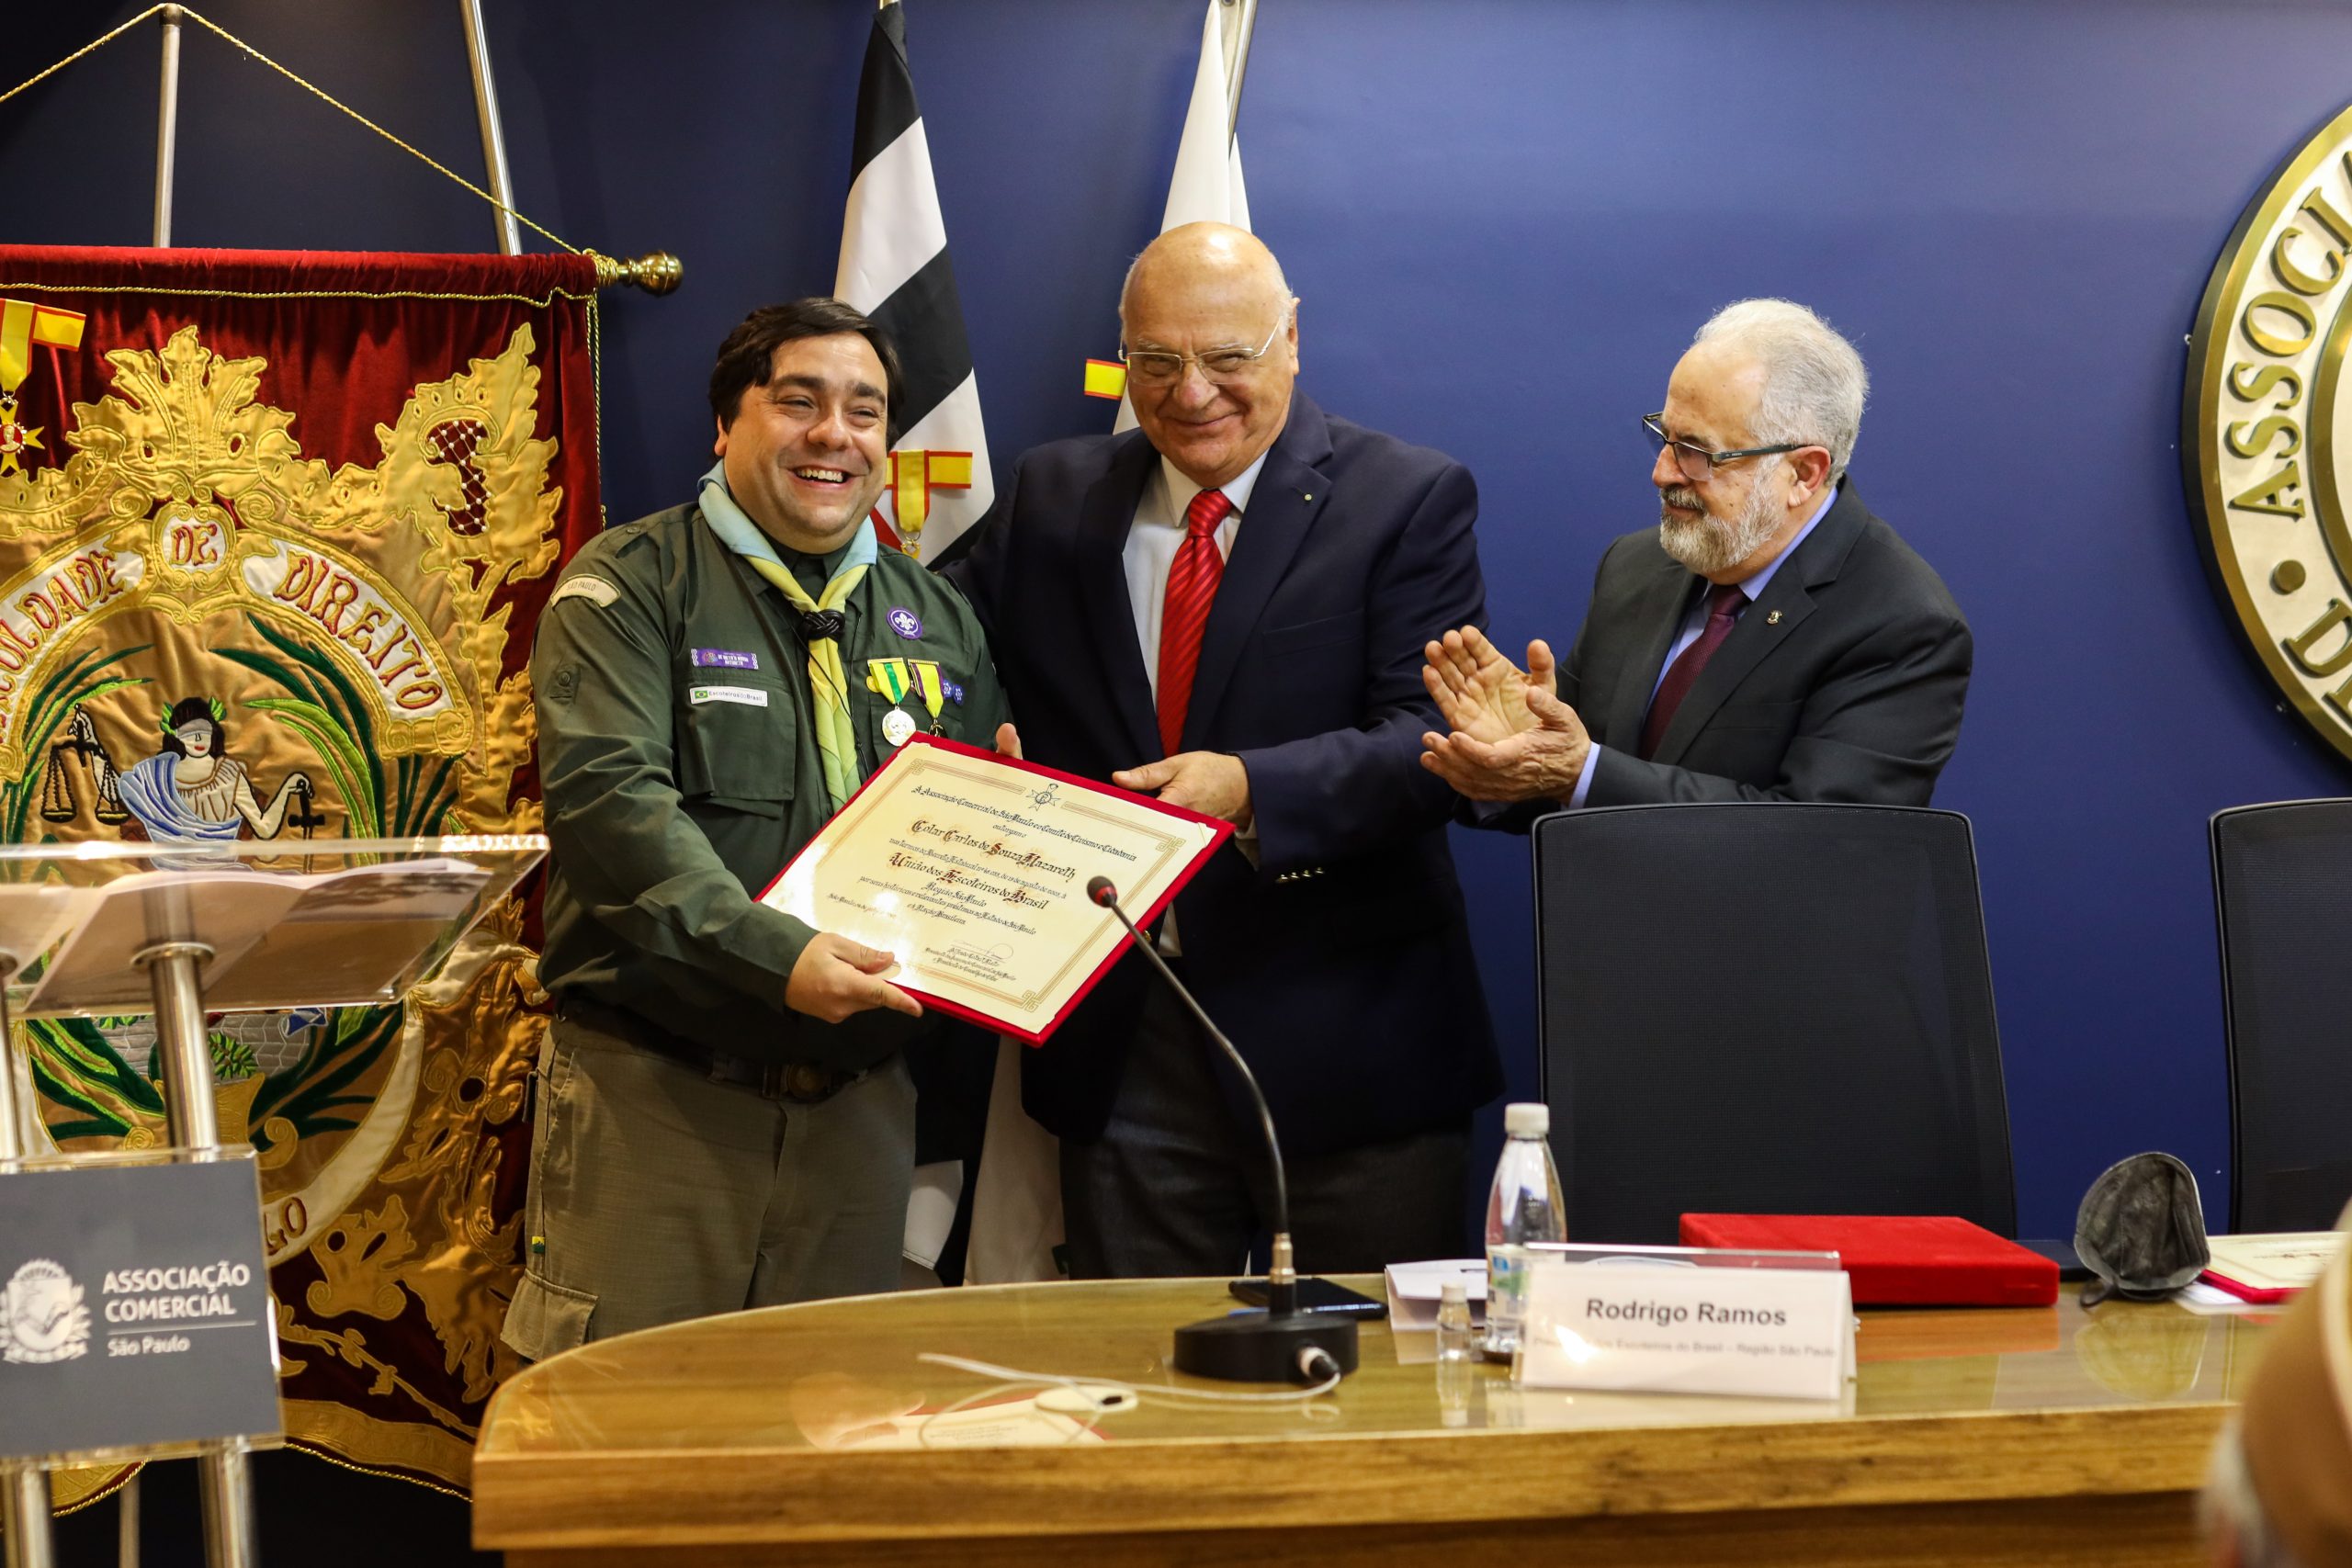 Escoteiros recebem honraria da Associação Comercial de São Paulo